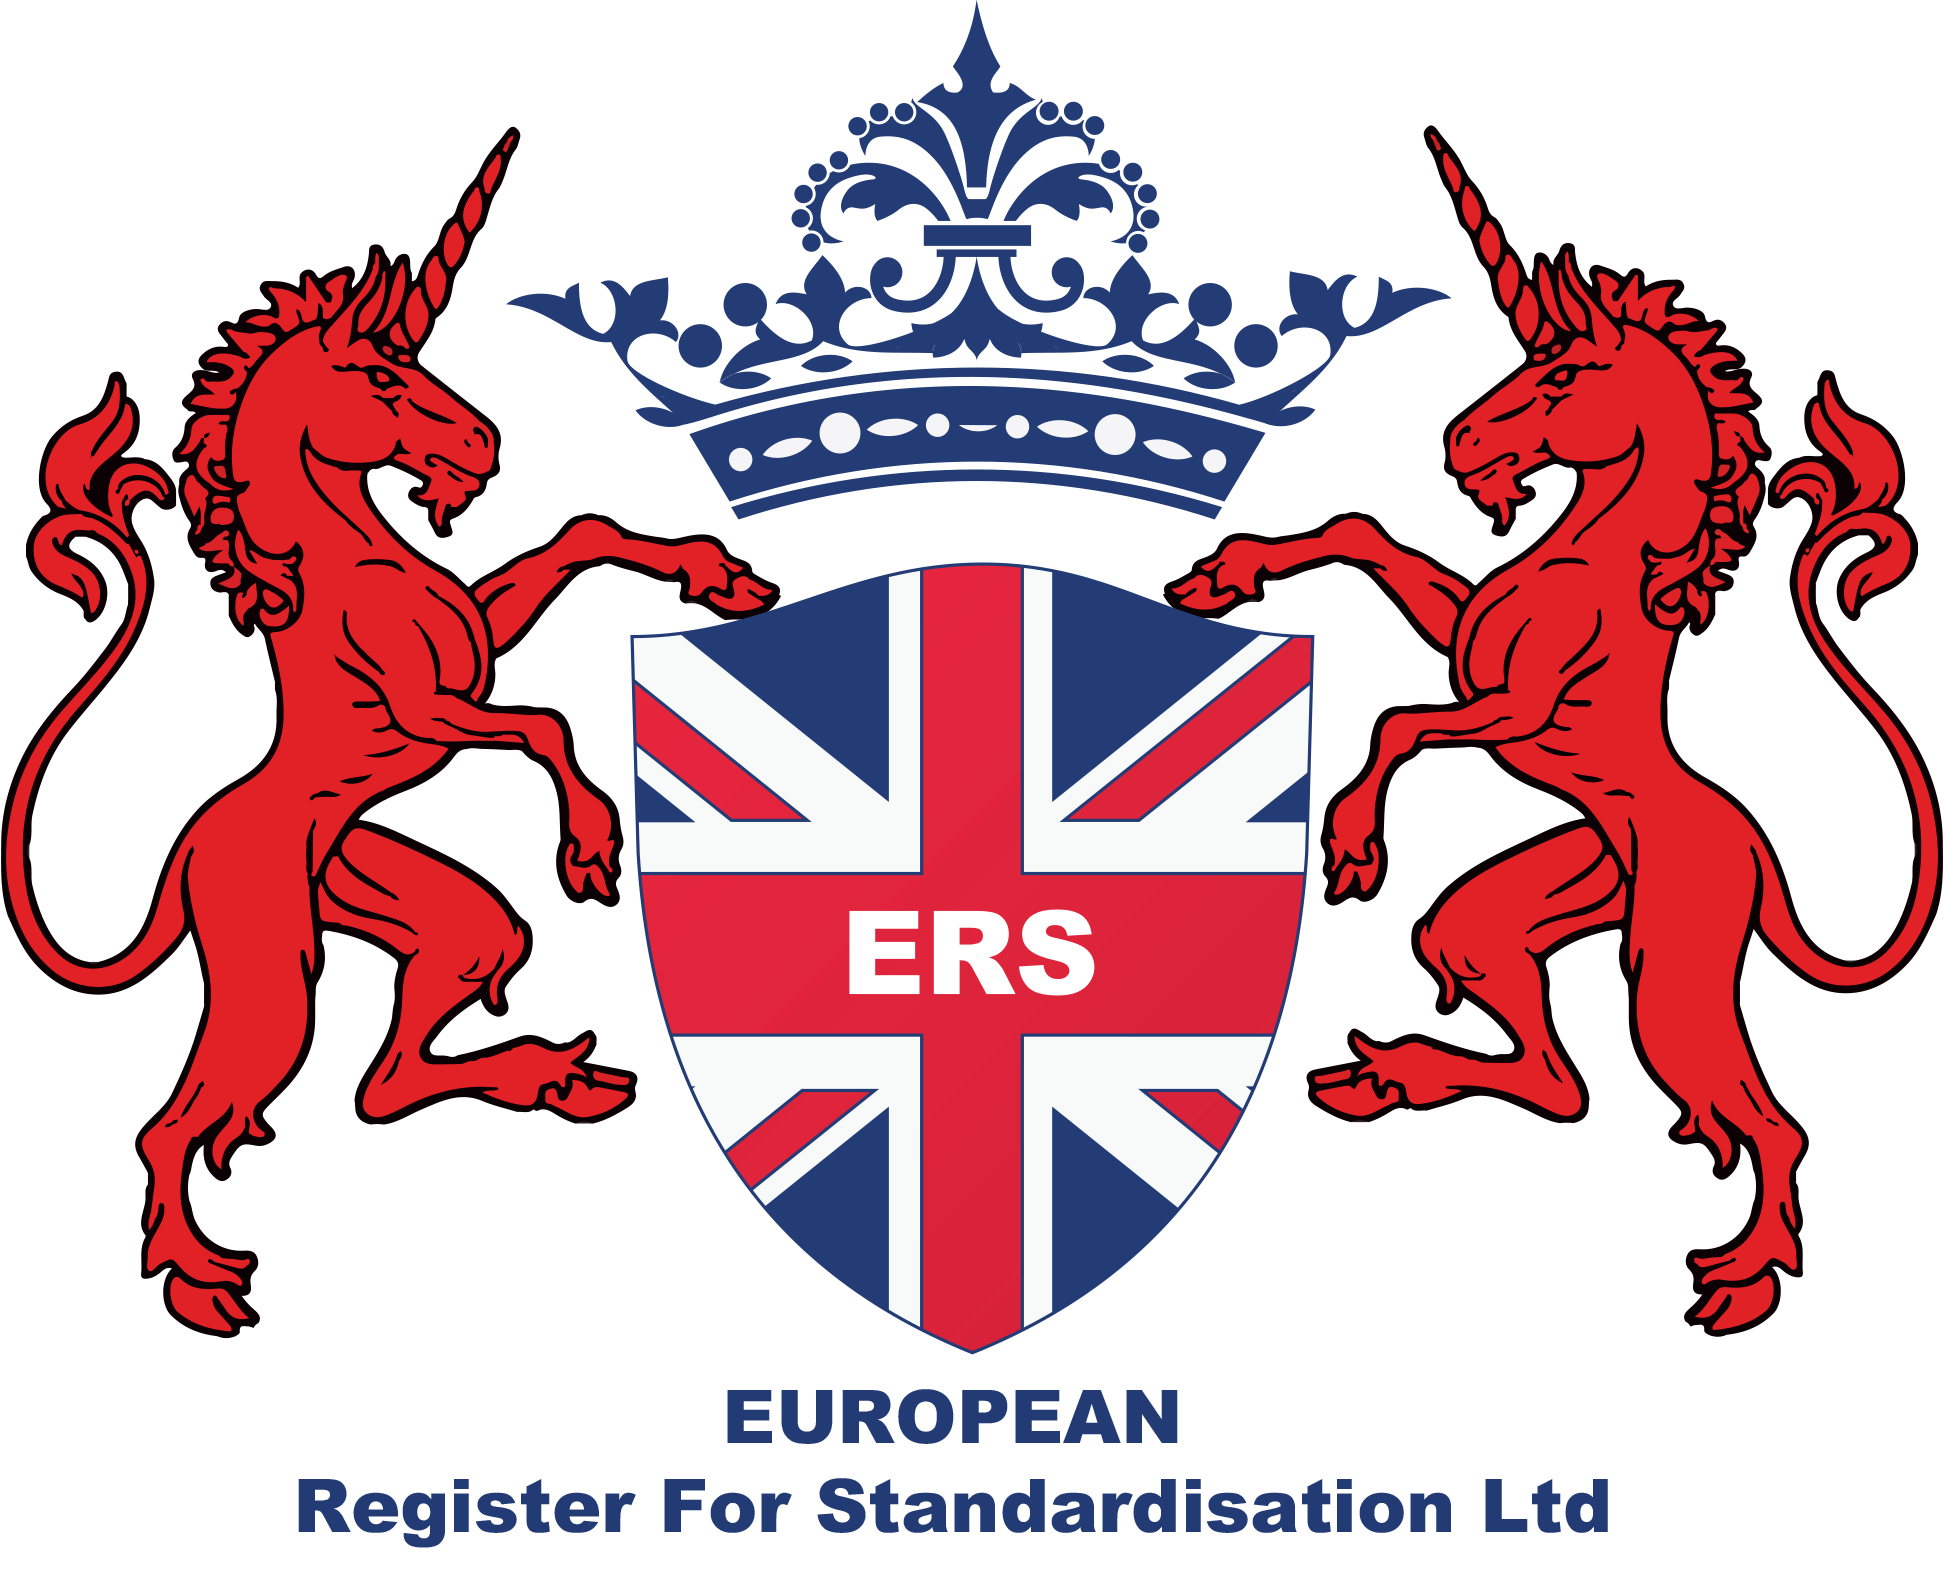 European Register For Standardisation